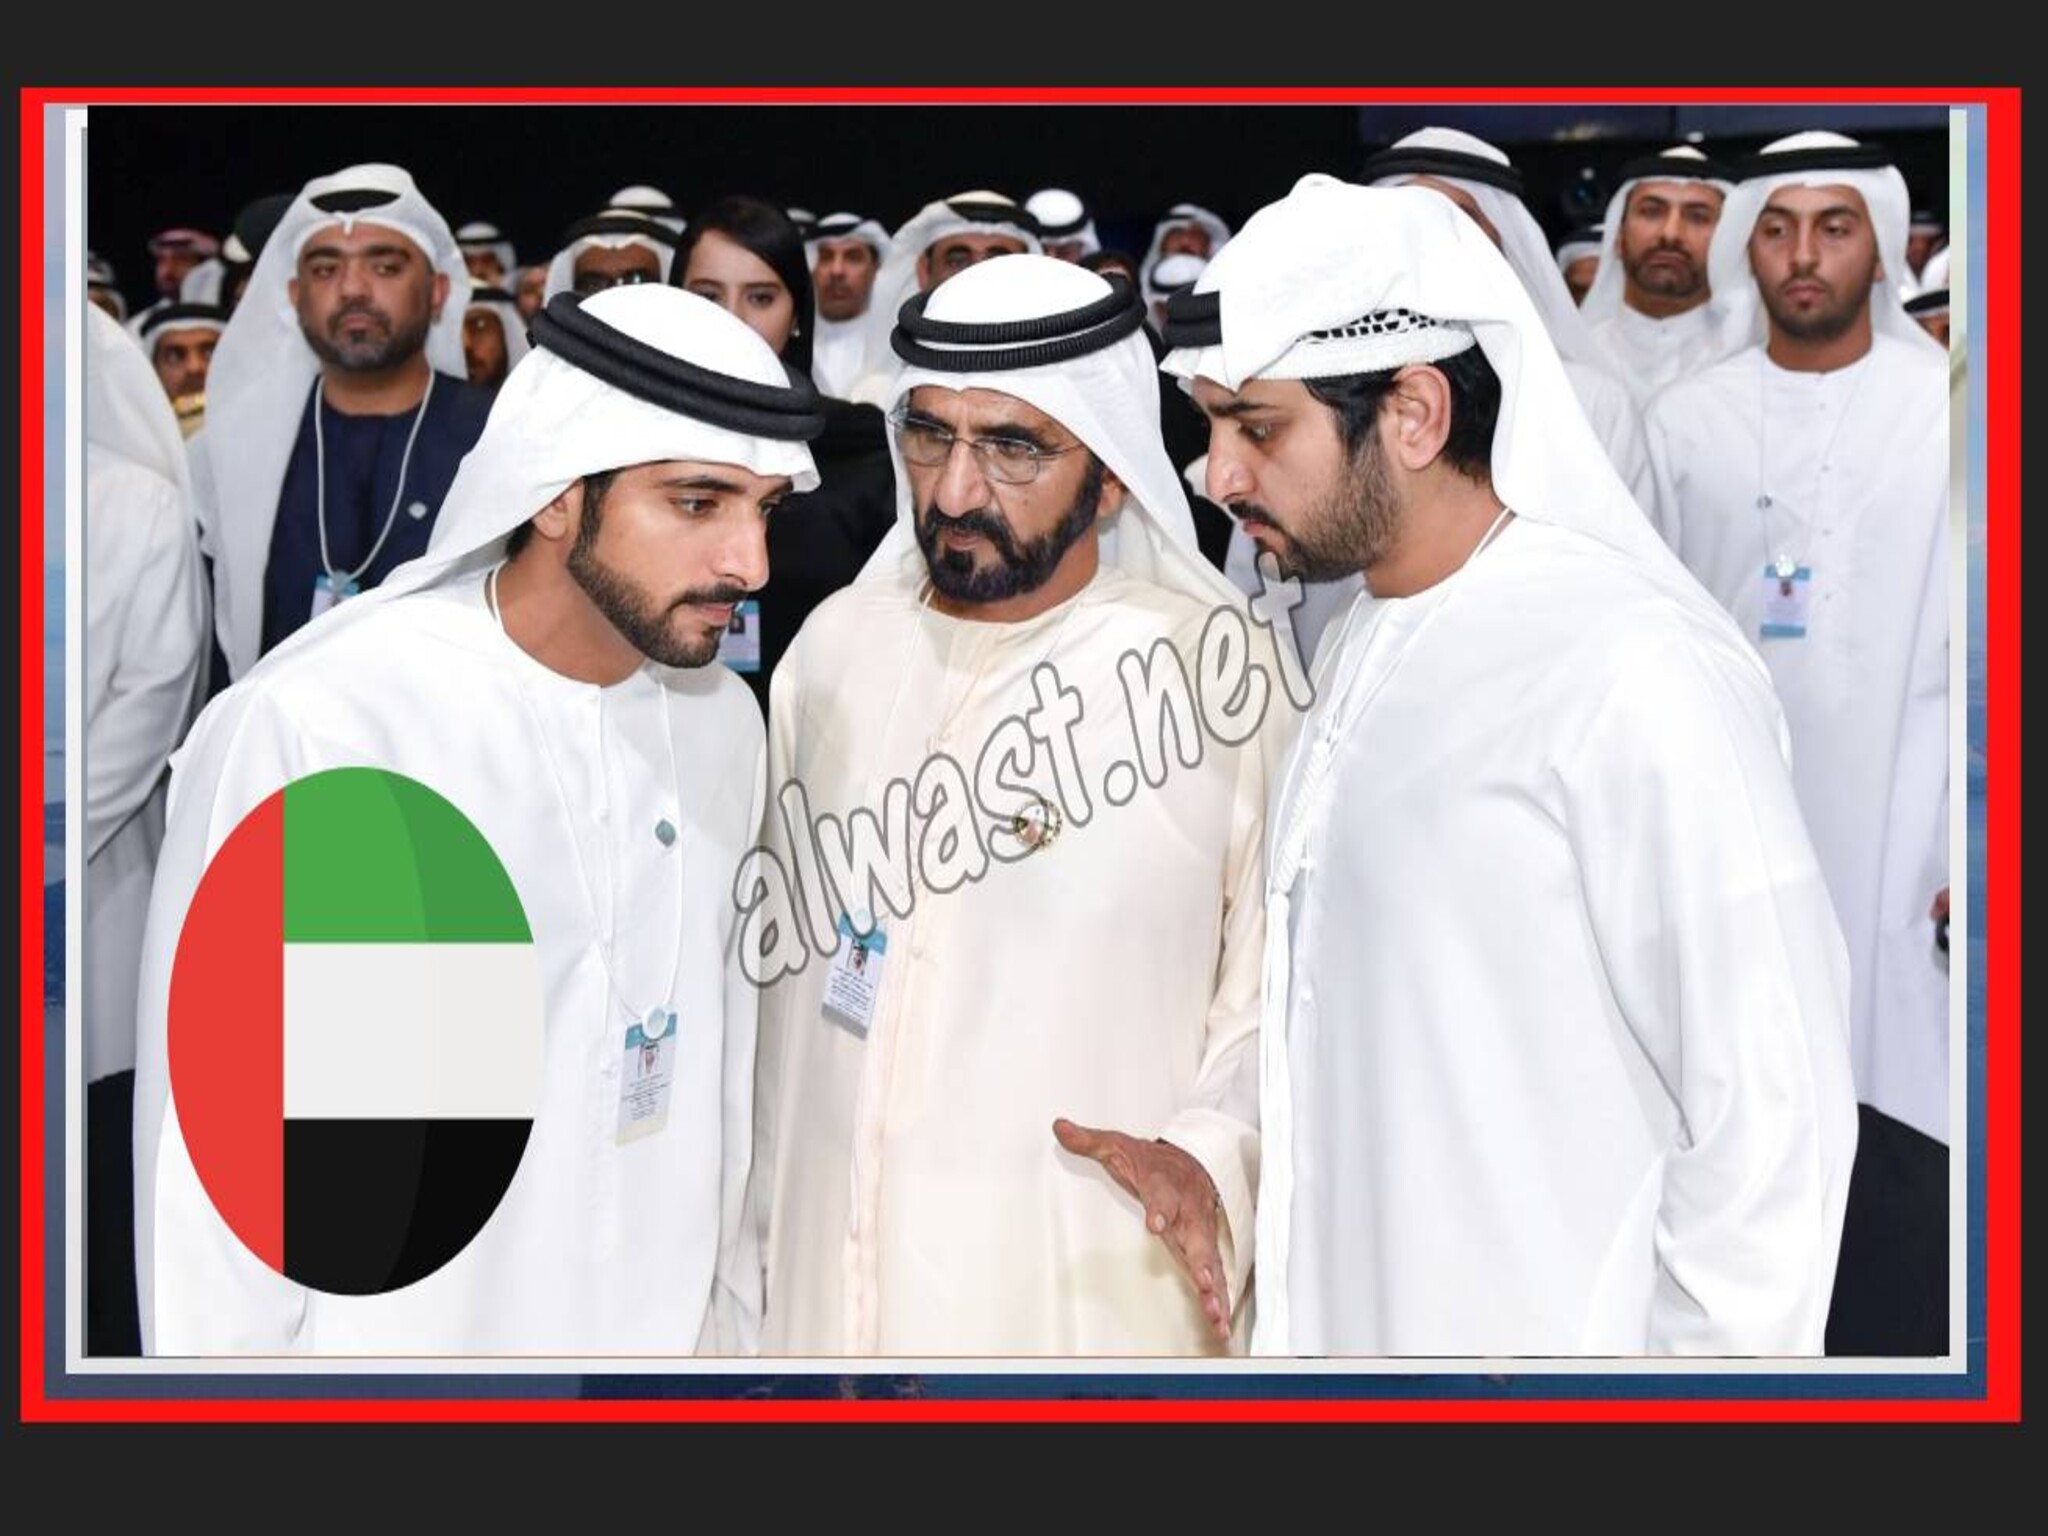 Sheikh Mohammed bin Rashid Issues Decree Forming Dubai Council